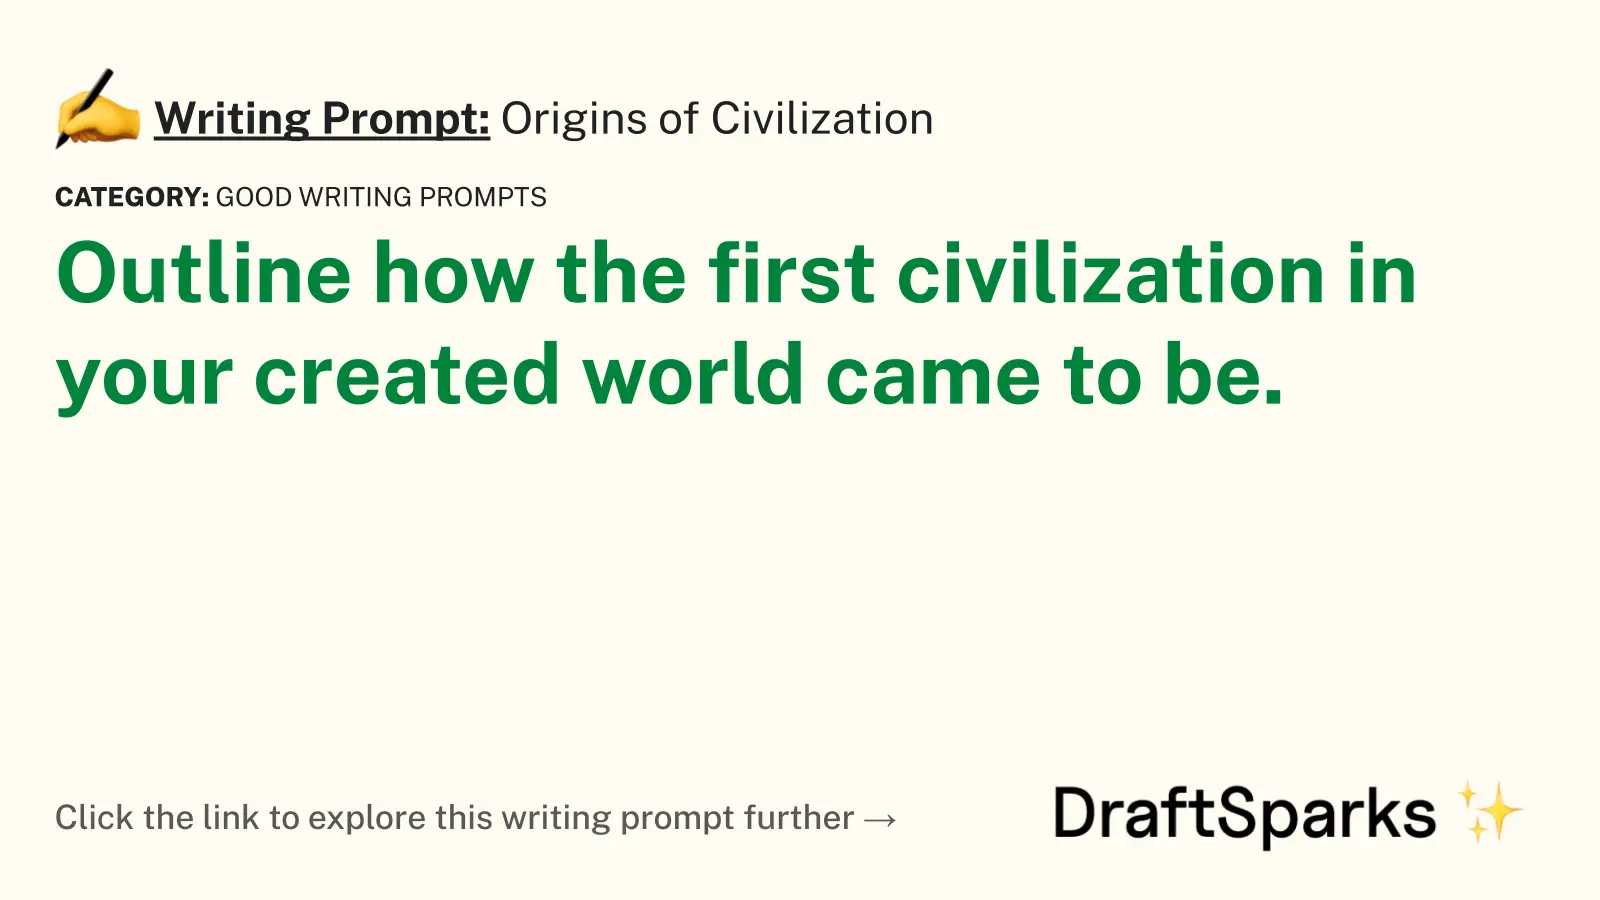 Origins of Civilization